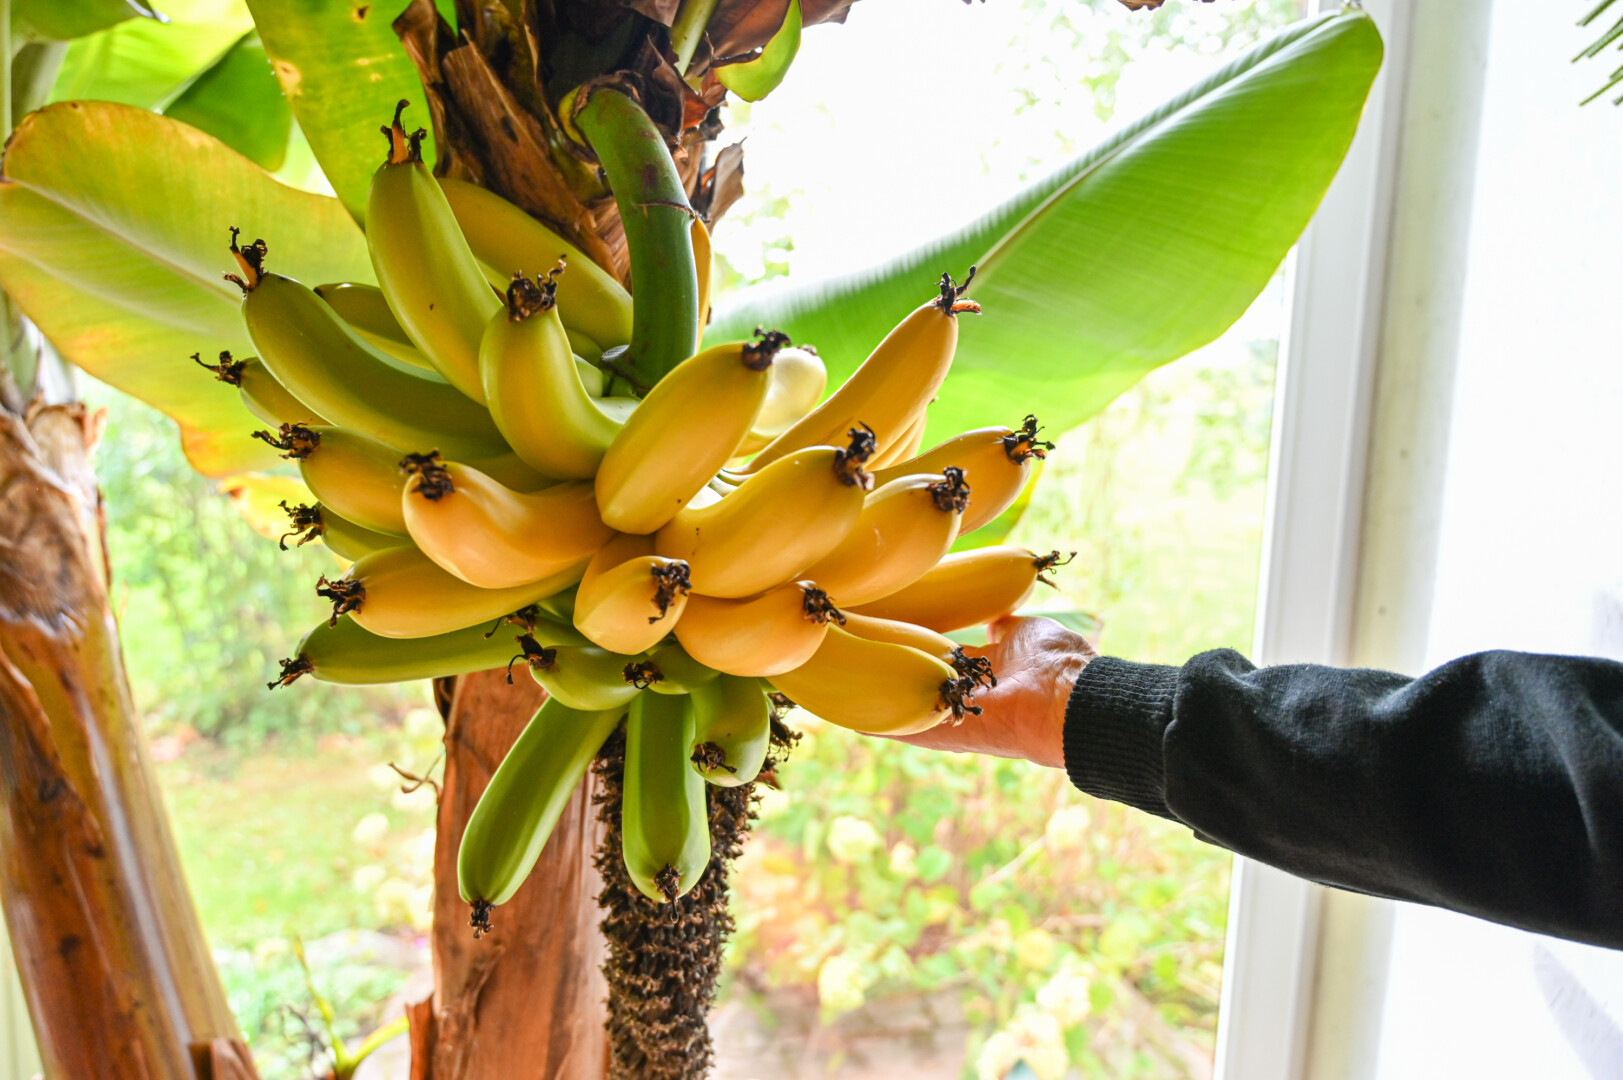 Berčiūnų kaime gyvenanti Vaičiulėnų šeima jau trečią kartą gardžiuosis pačių užaugintais bananais. Įspūdingas augalas šiemet užmezgė kaip niekada daug saldžių ir kvapnių vaisių.